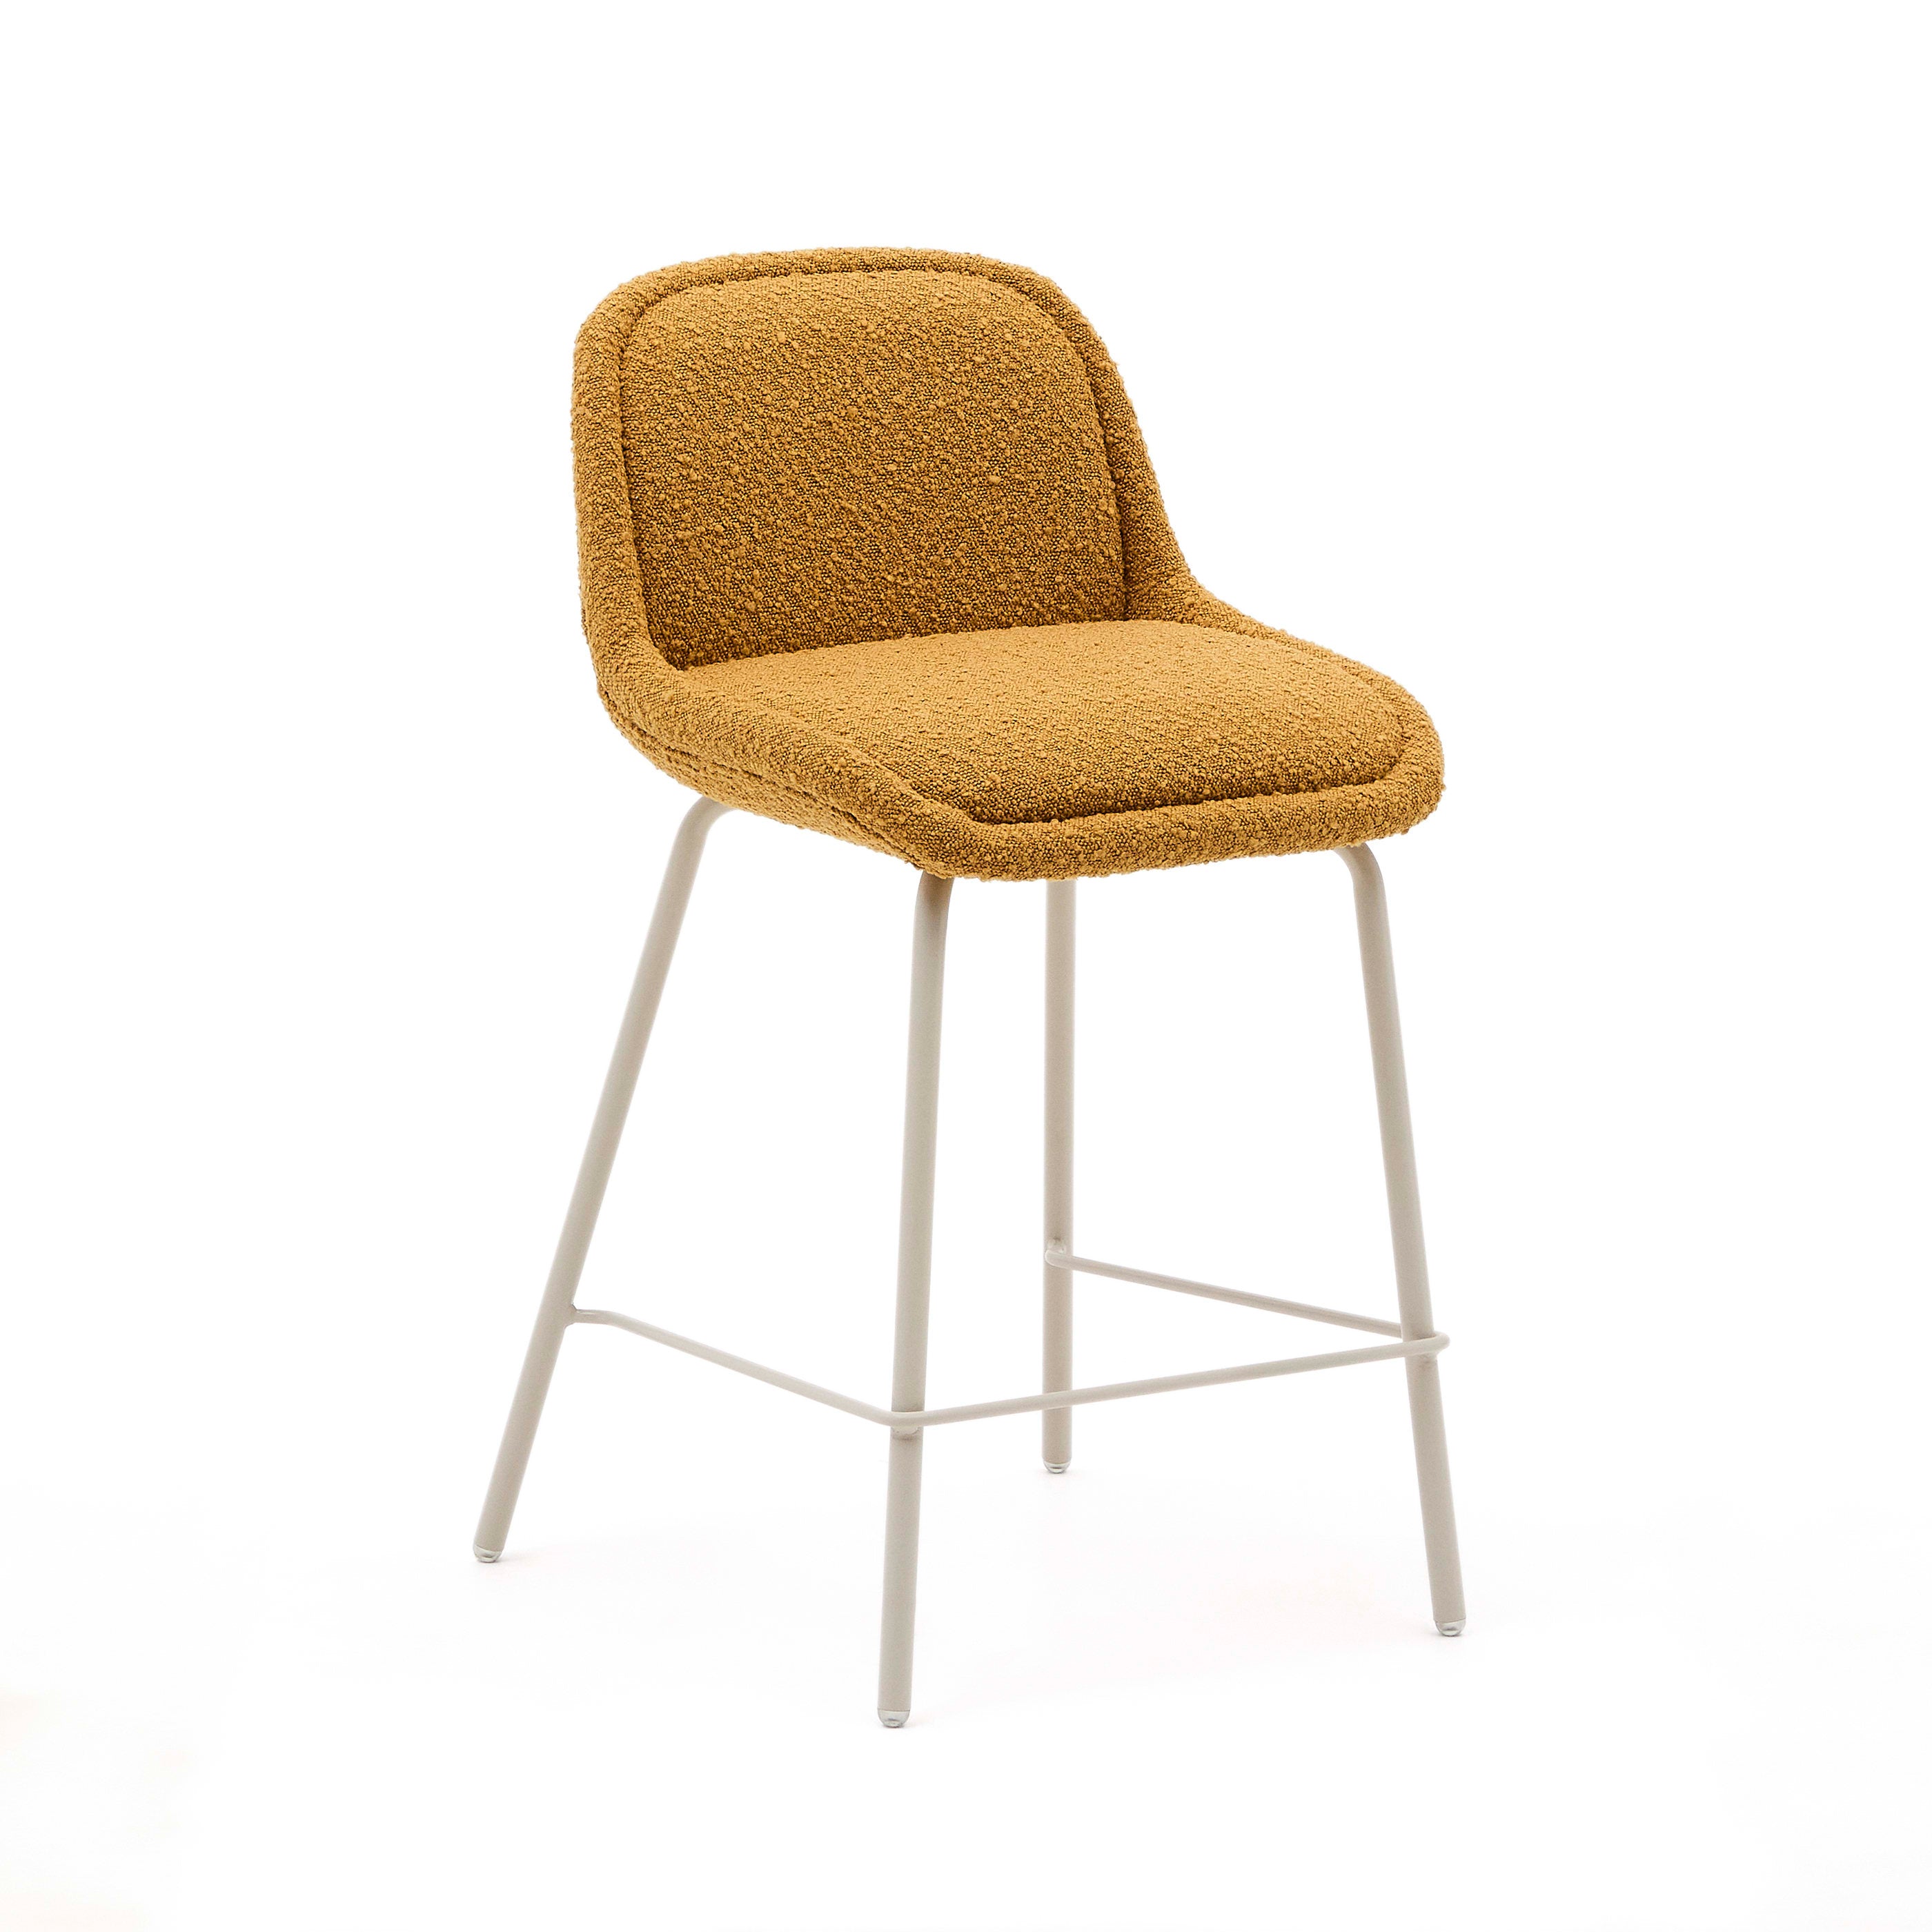 Aimin szék mustársárga bouclé szövetből, acél lábakkal, bézs festék bevonattal, 65 cm